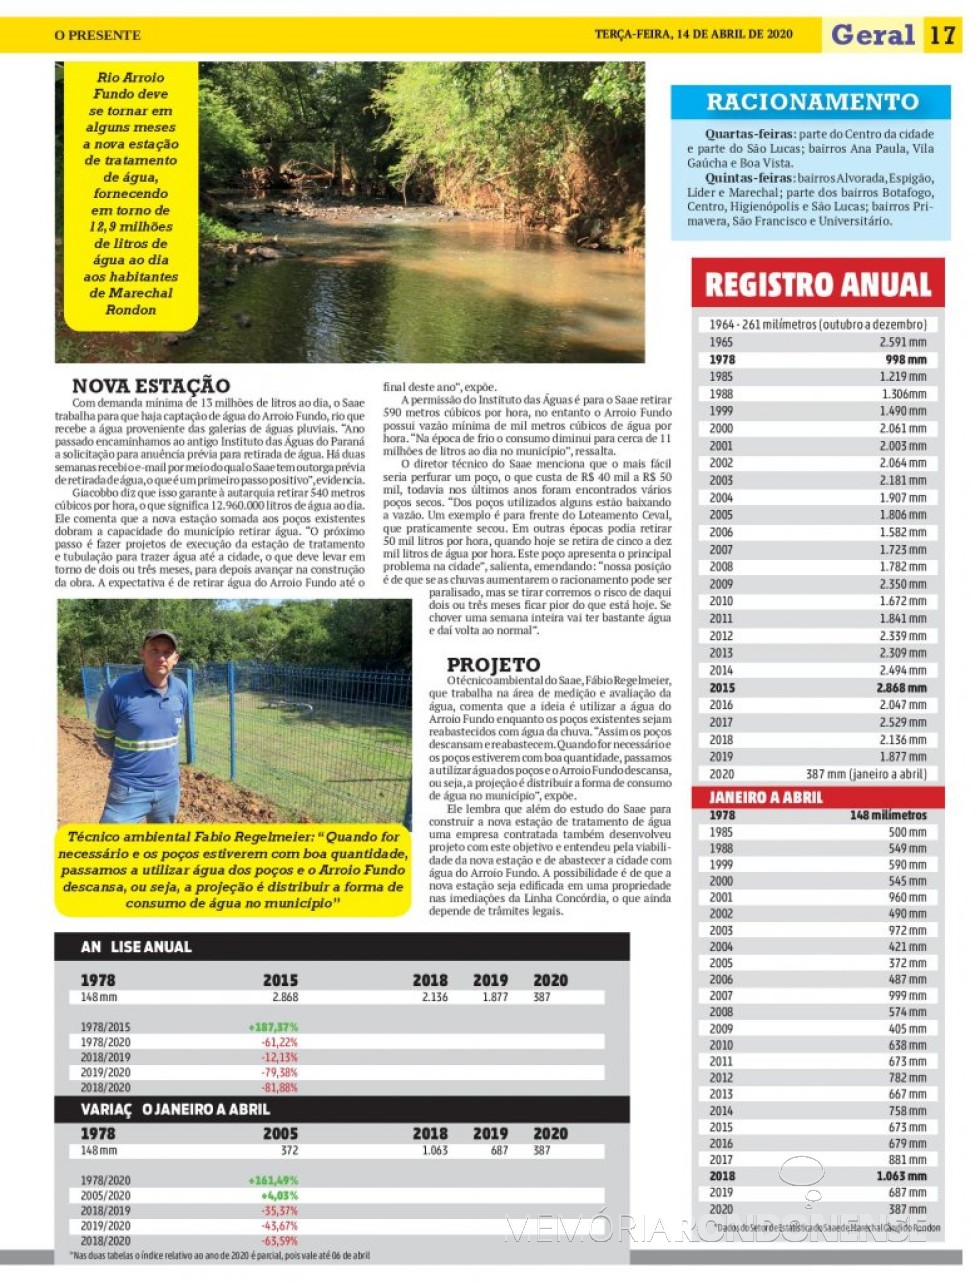 || Destaque (parte final) do jornal O Presente sobre a seca que implica no racionamento da água em Marechal Cândido Rondon. 
Imagem: Acervo O Presente - FOTO 12